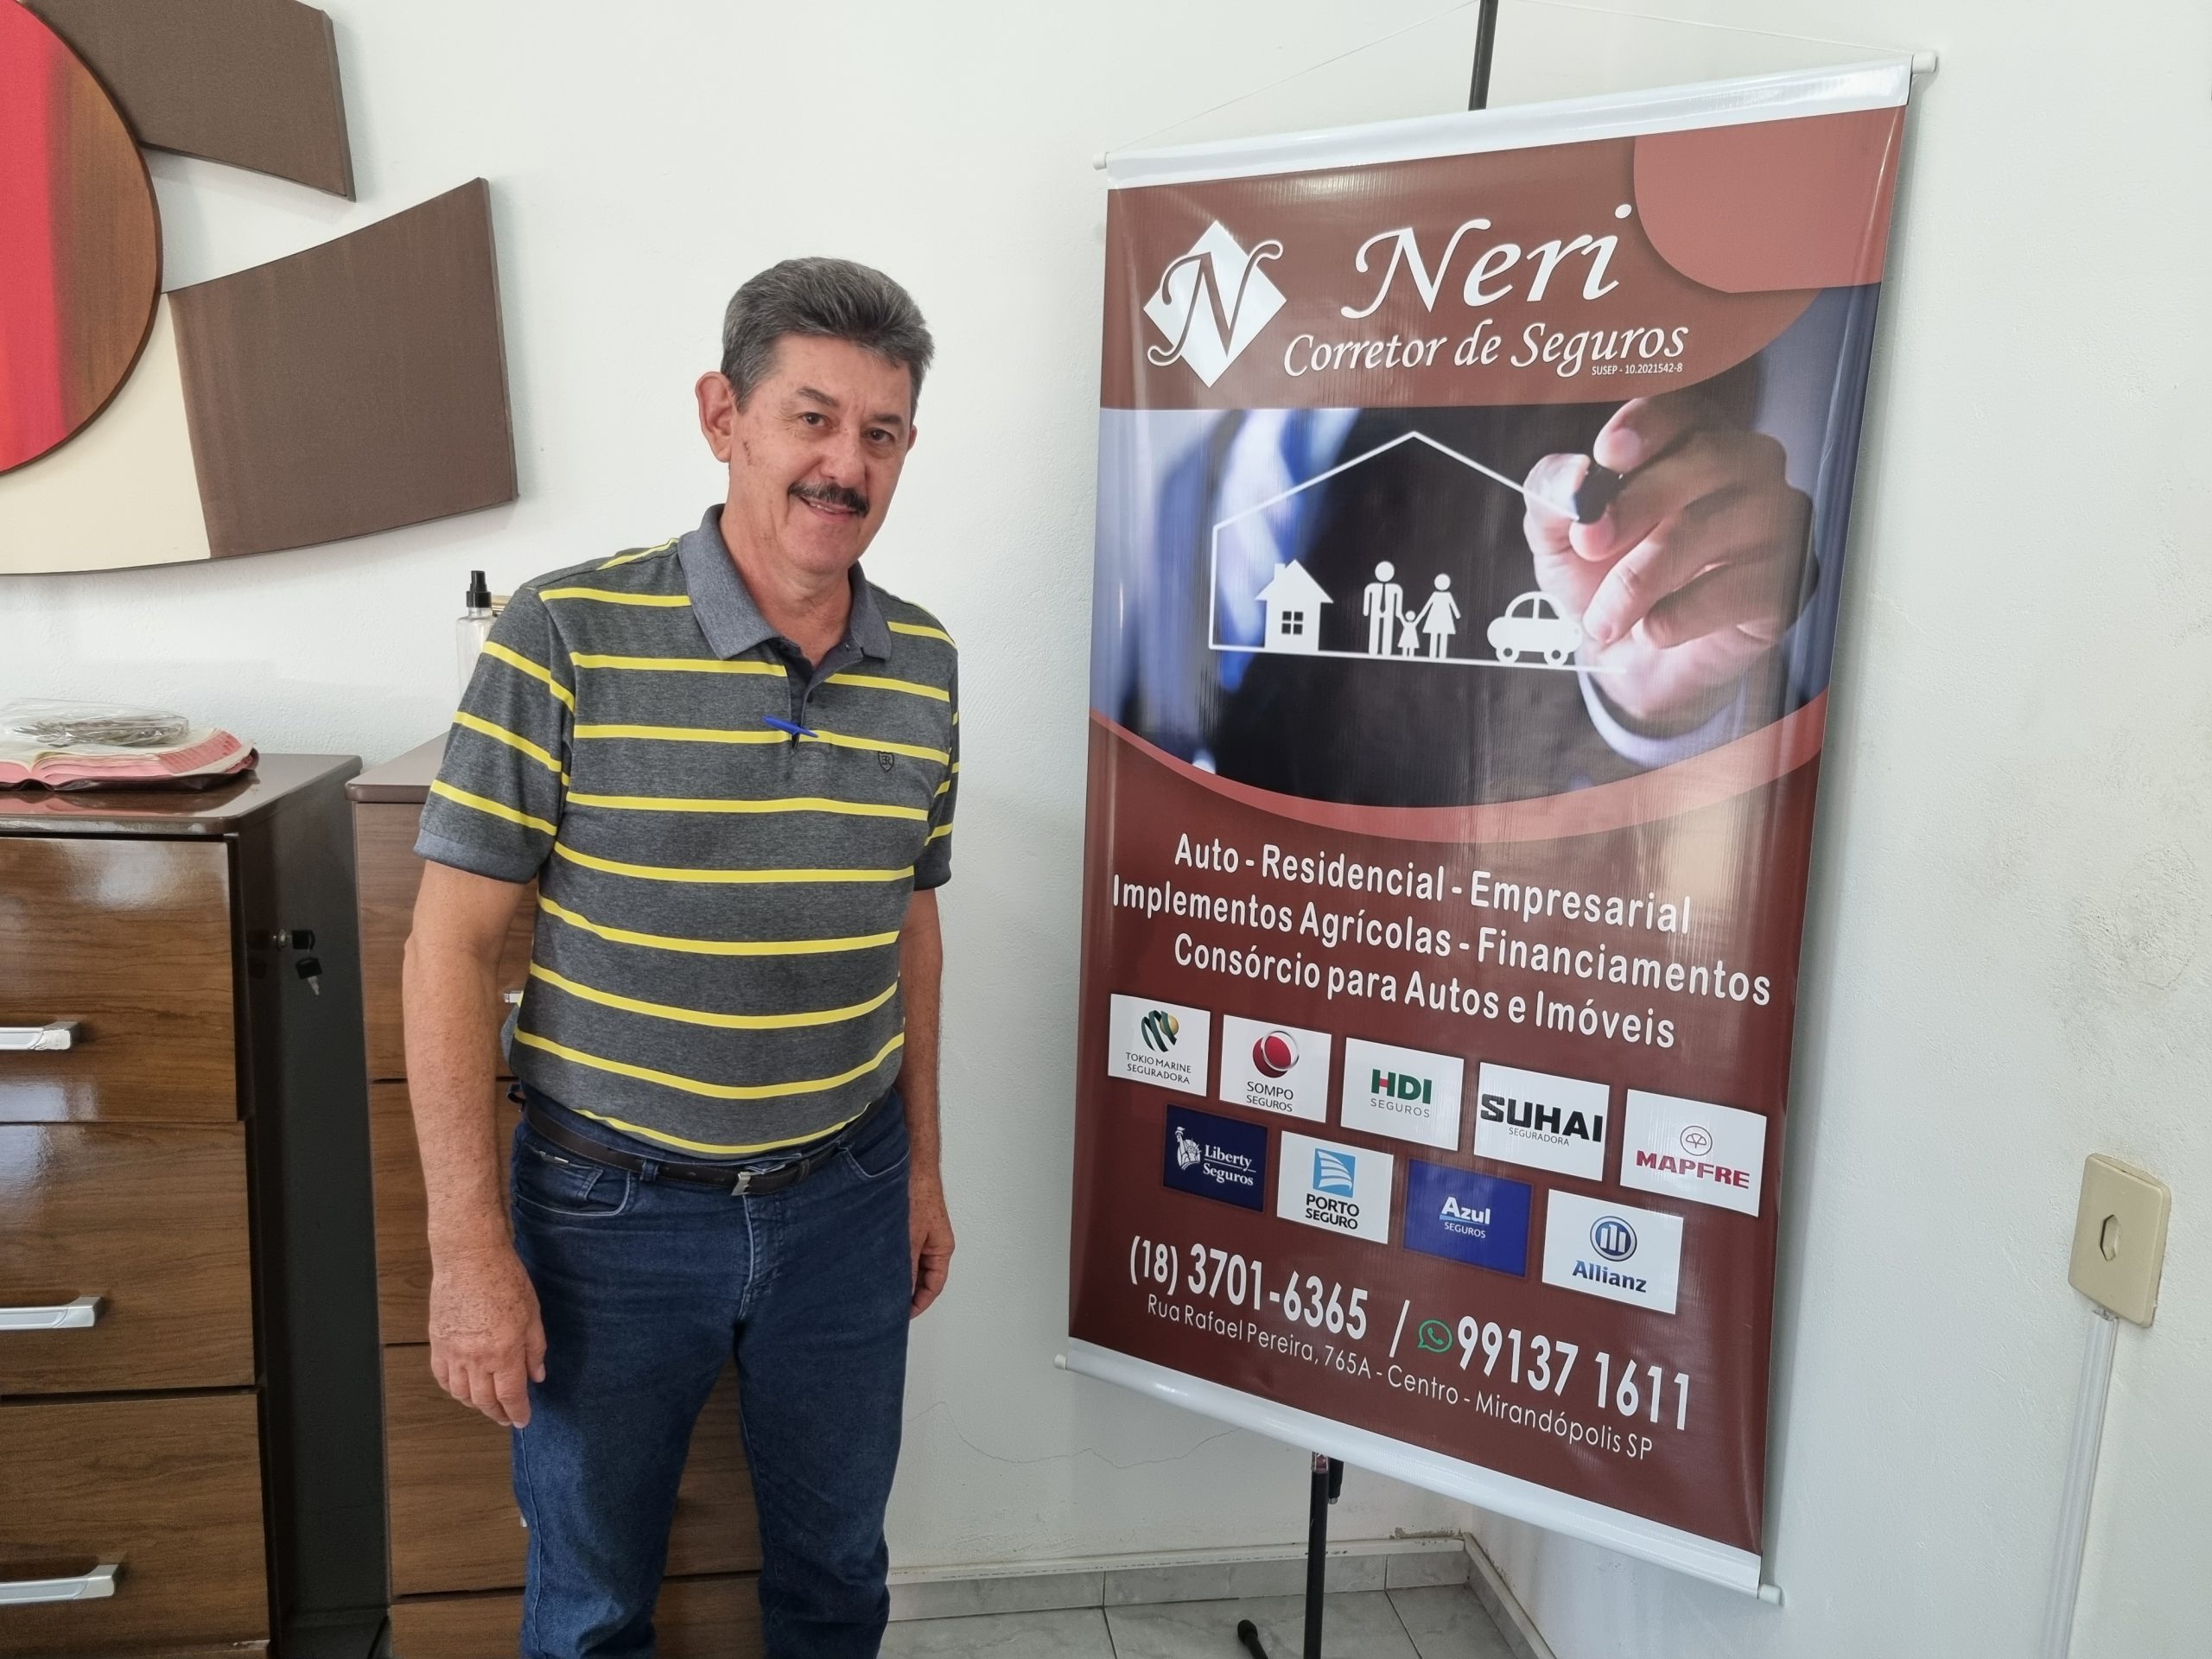 ‘Estabelecer profissionalmente com meu escritório em Mirandópolis sempre foi meu objetivo’, diz Neri